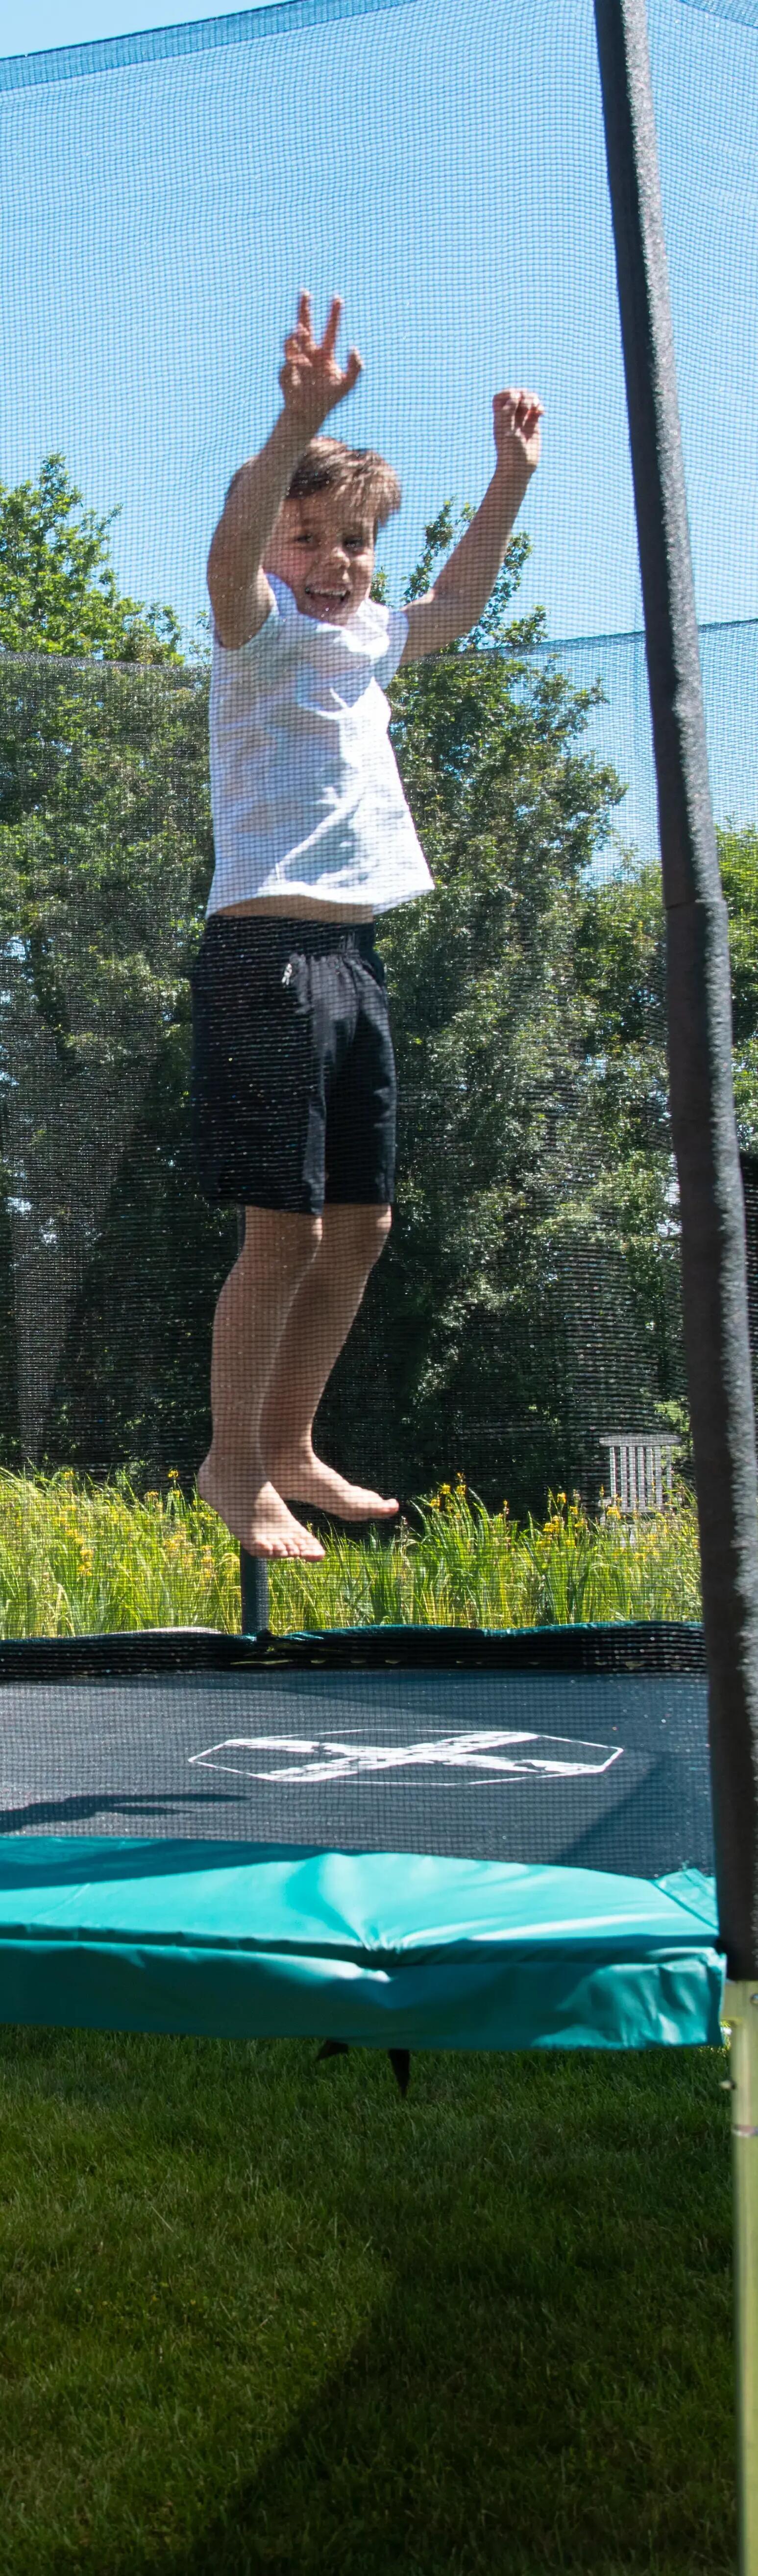 3 spelideeën om in alle veiligheid op de trampoline te springen 